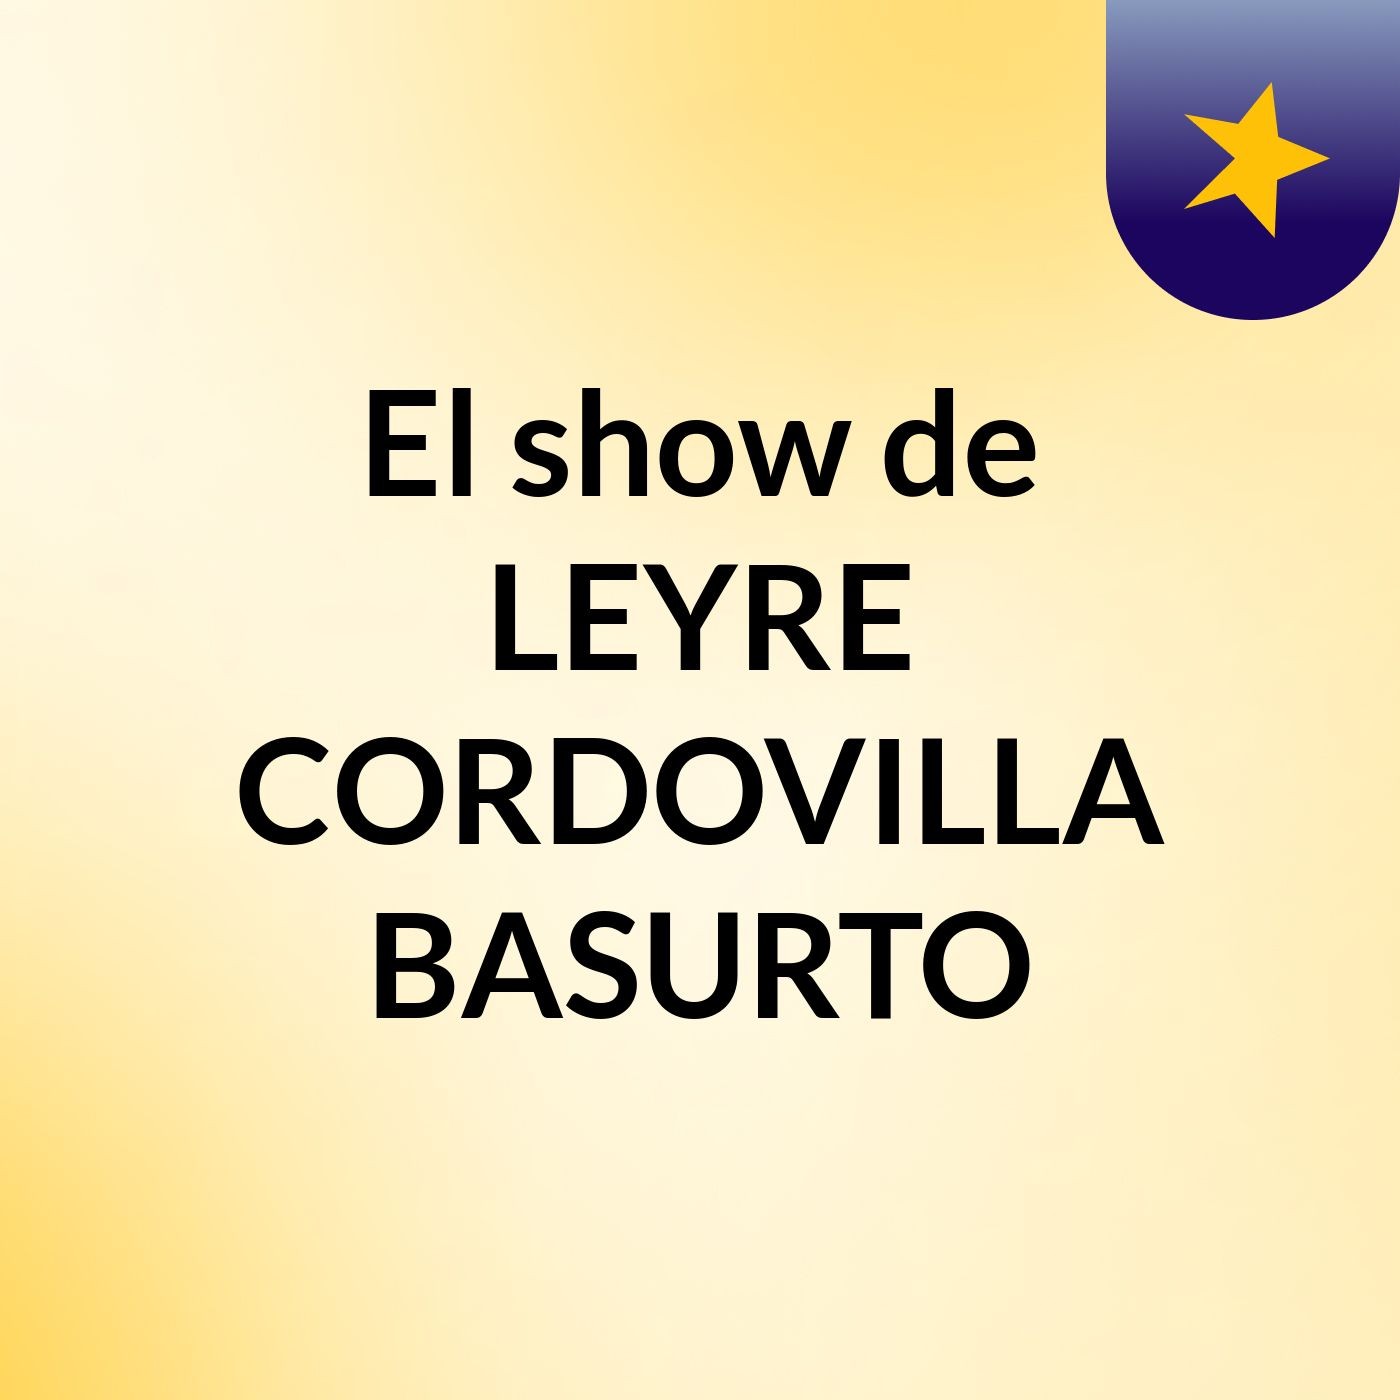 El show de LEYRE CORDOVILLA BASURTO